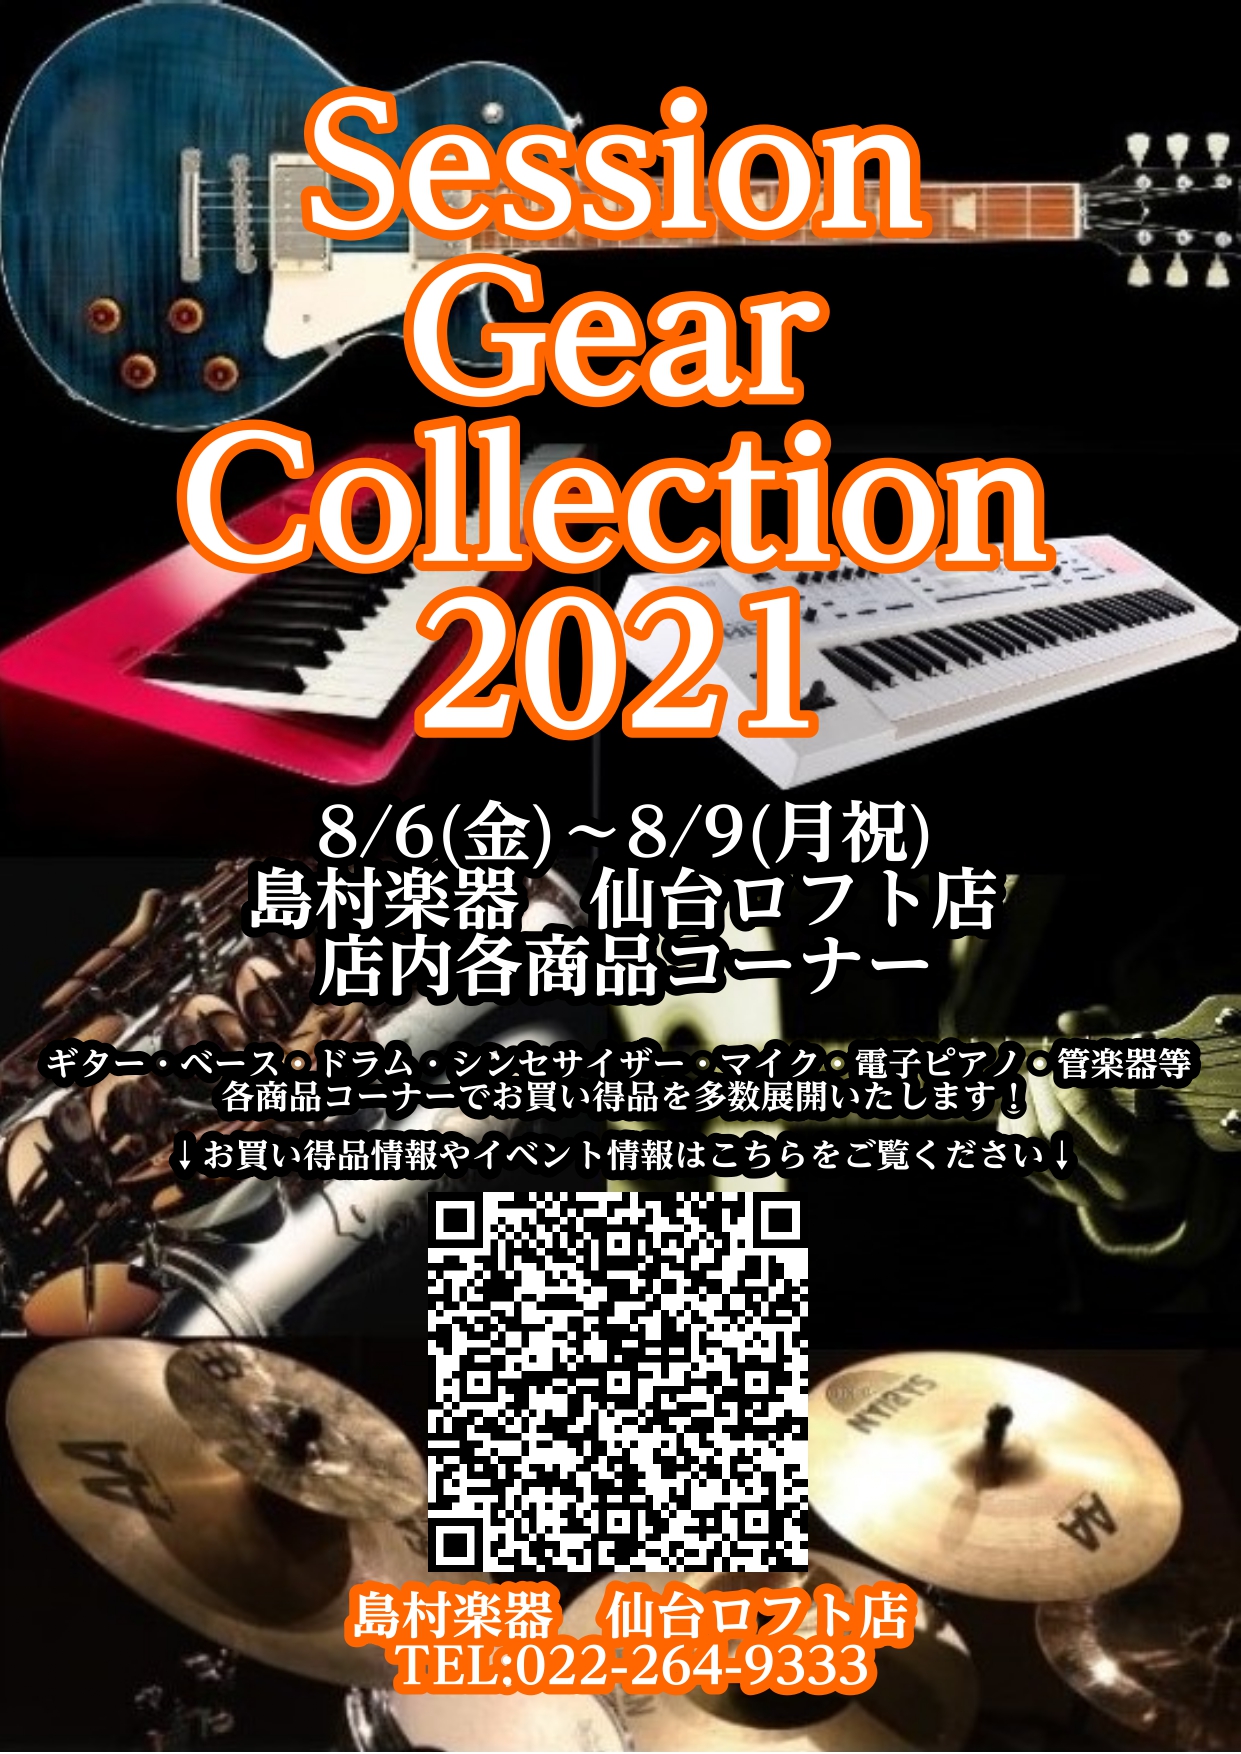 楽器の祭典！Session Gear Collection 2021開催します！【8月6日(金)～9日(月祝)】